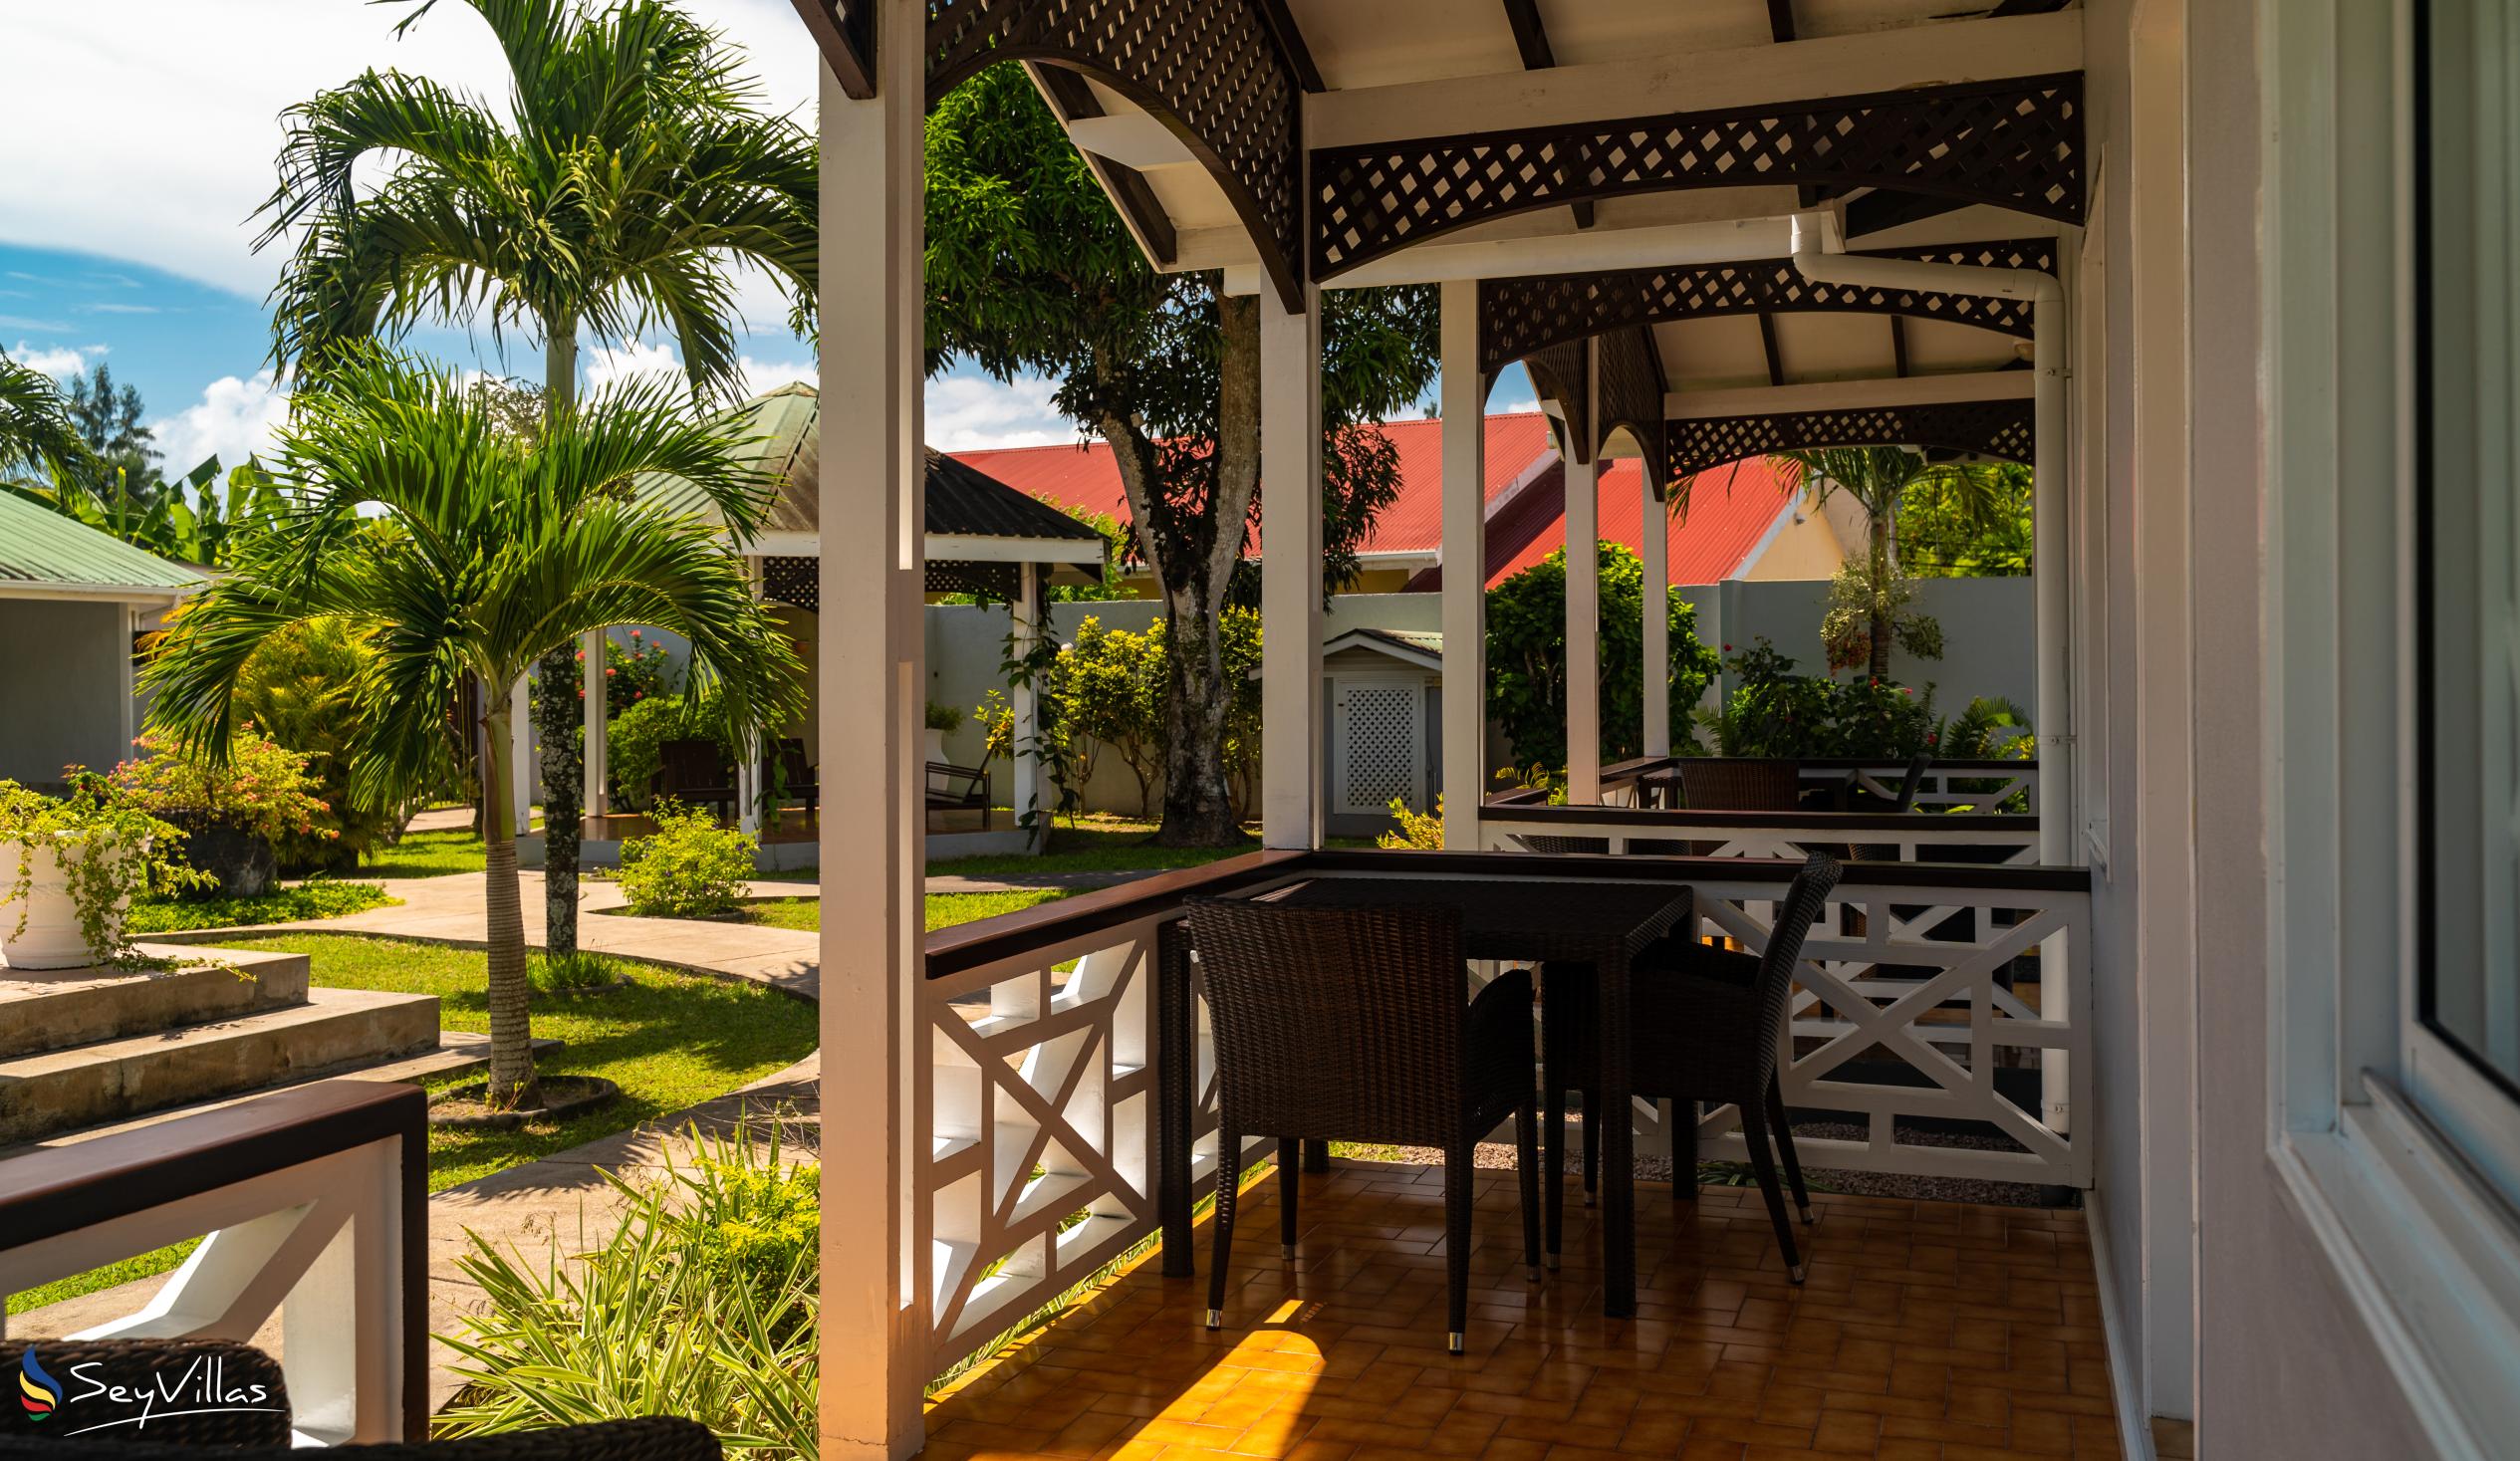 Photo 22: Hotel La Roussette - Outdoor area - Mahé (Seychelles)